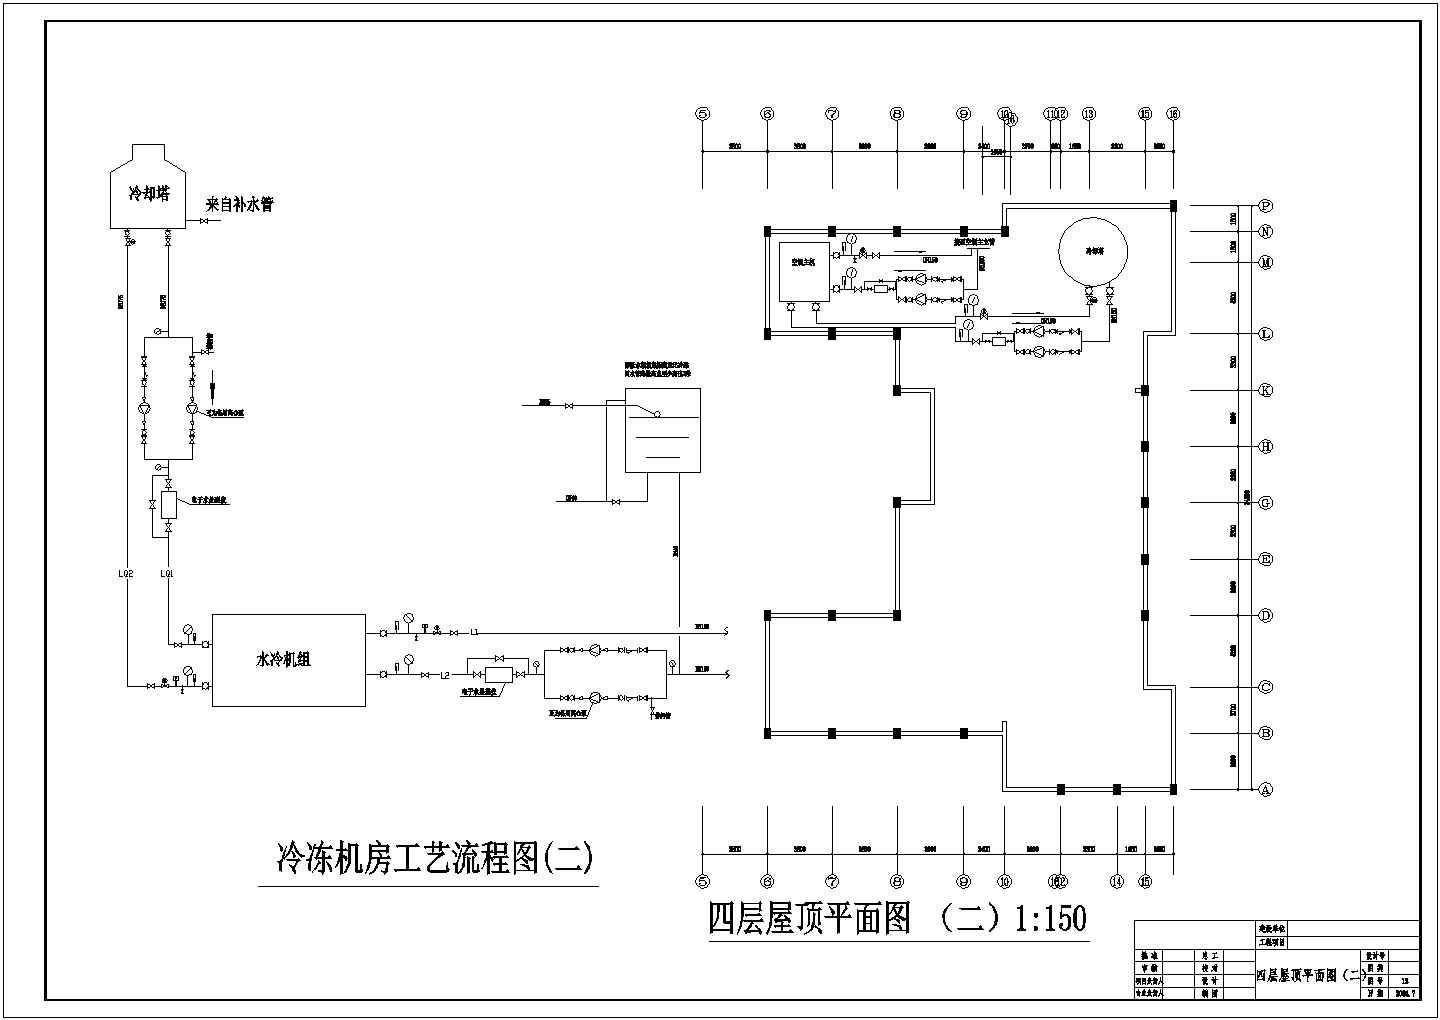 4000㎡会议中心办公楼空调通风系统设计施工图（风冷热泵机组）